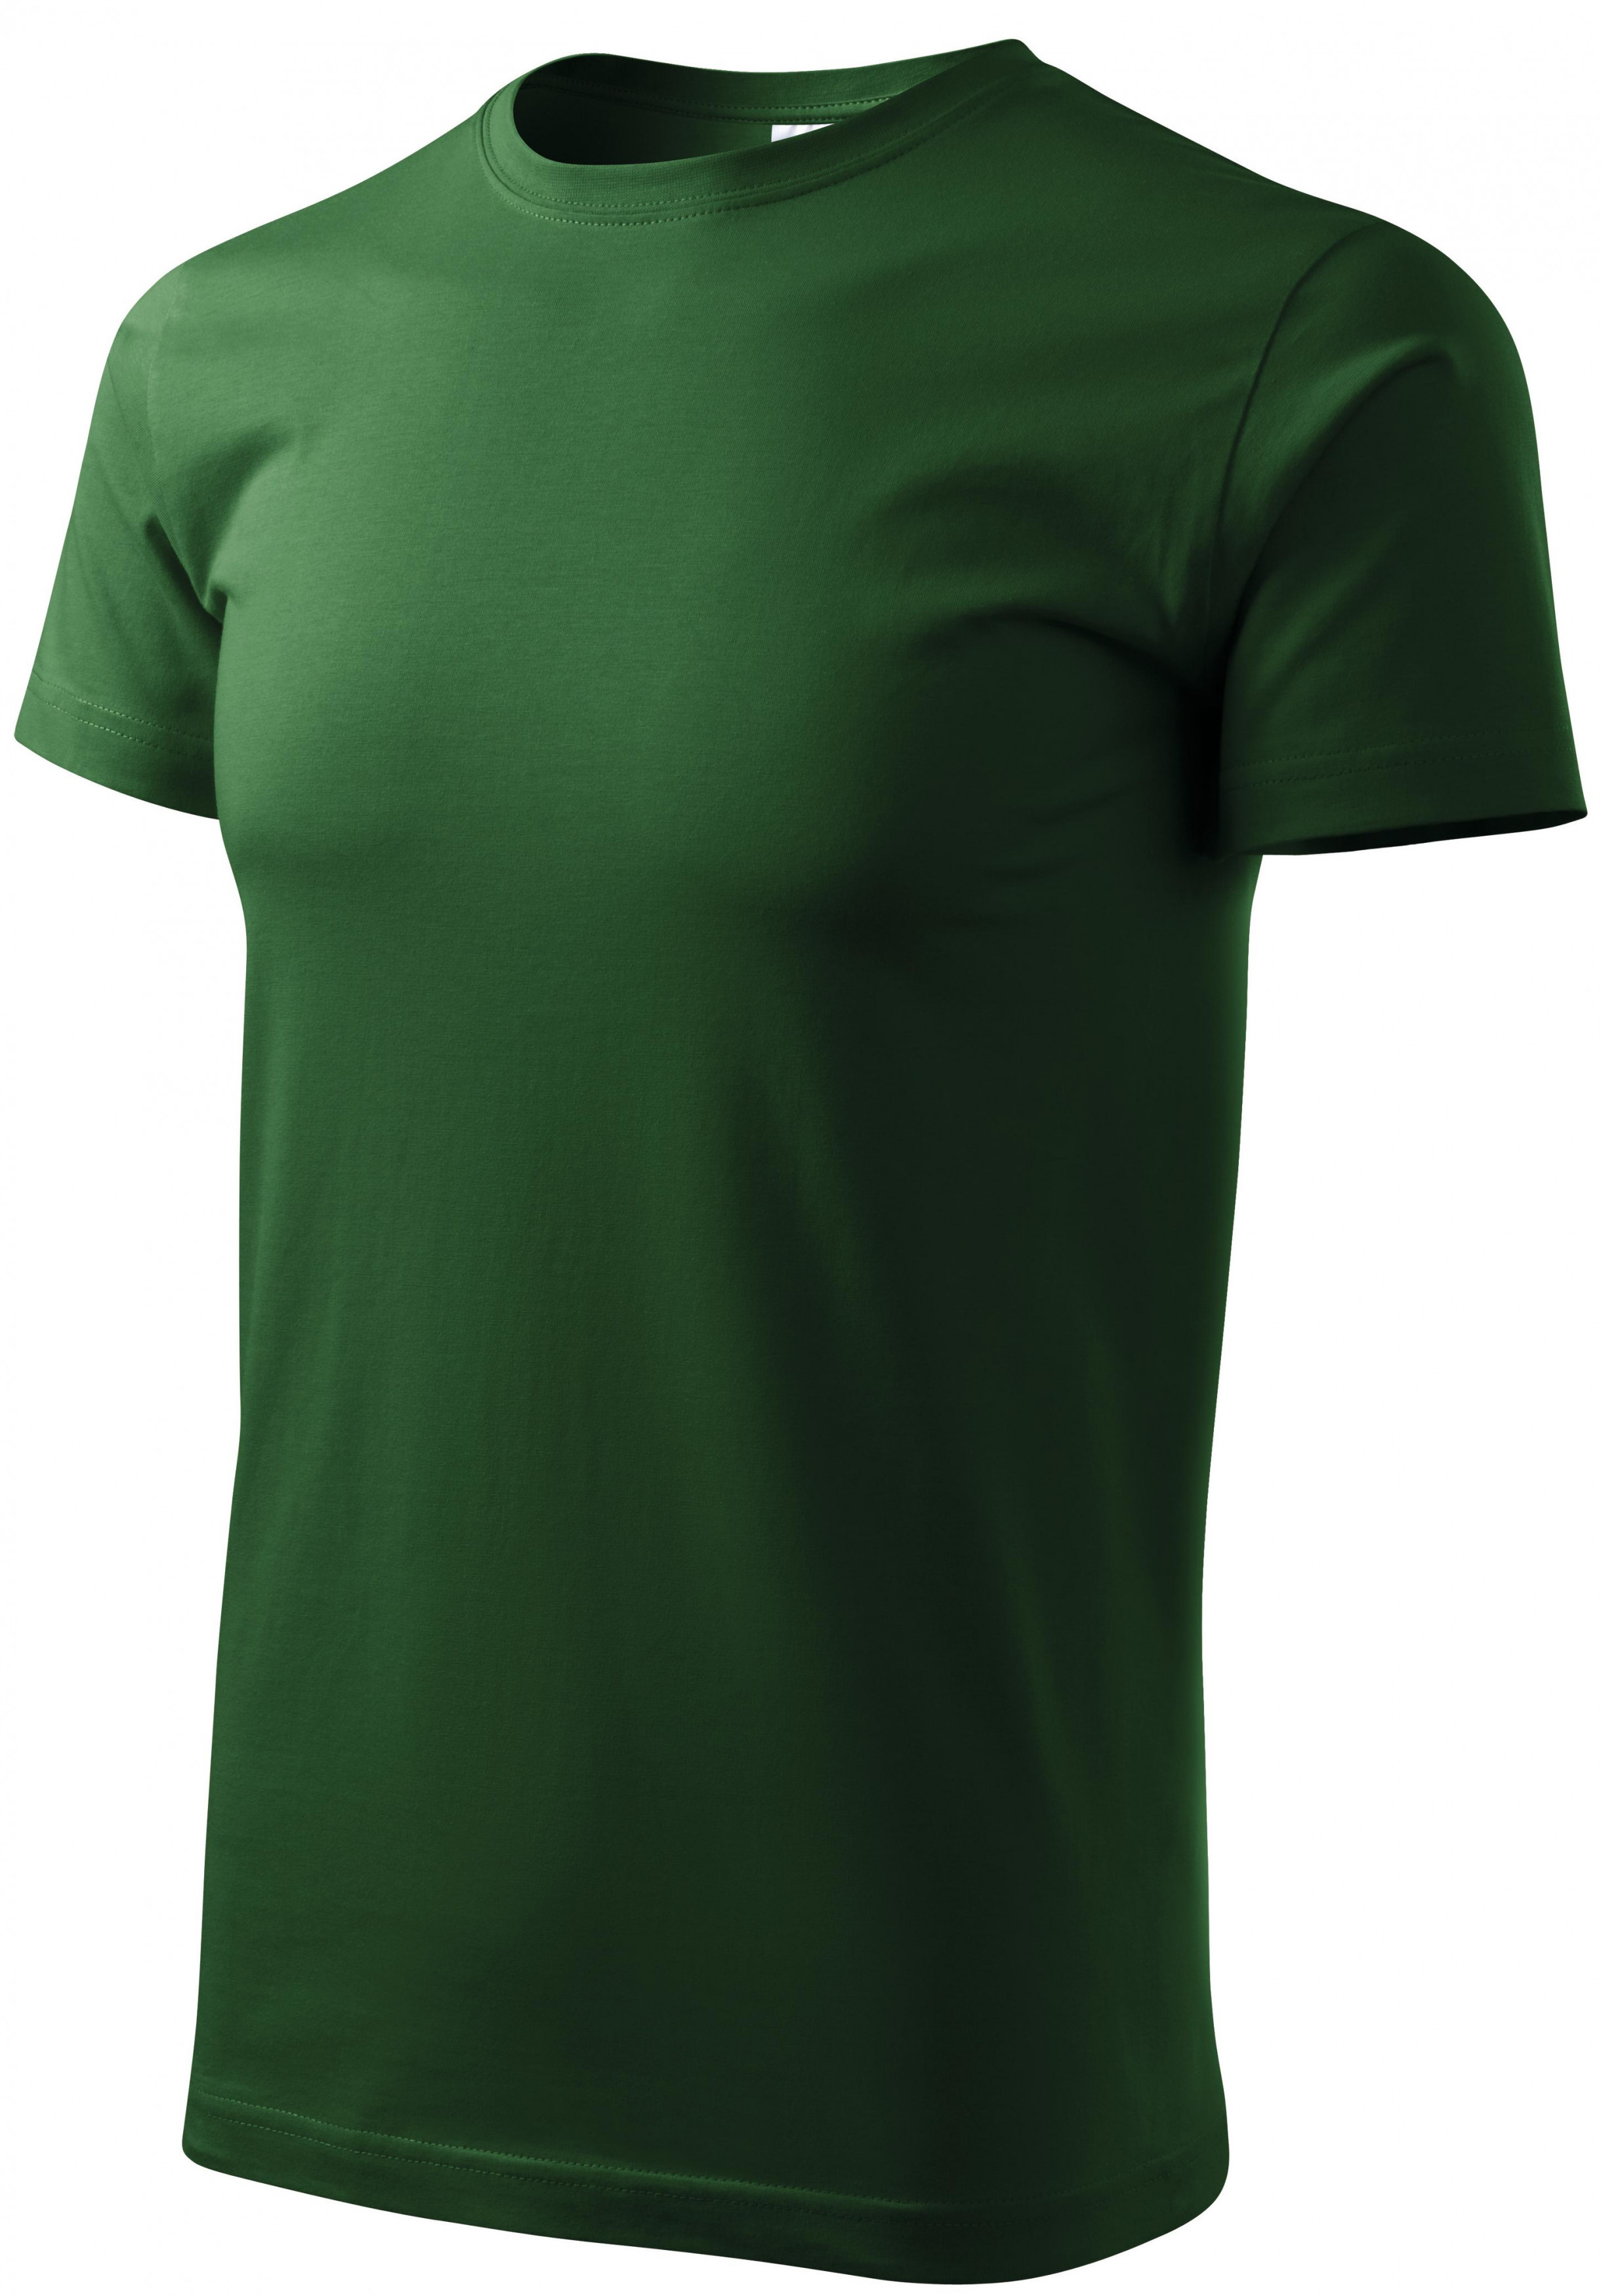 Unisex nagyobb súlyú póló, üveg zöld, 3XL